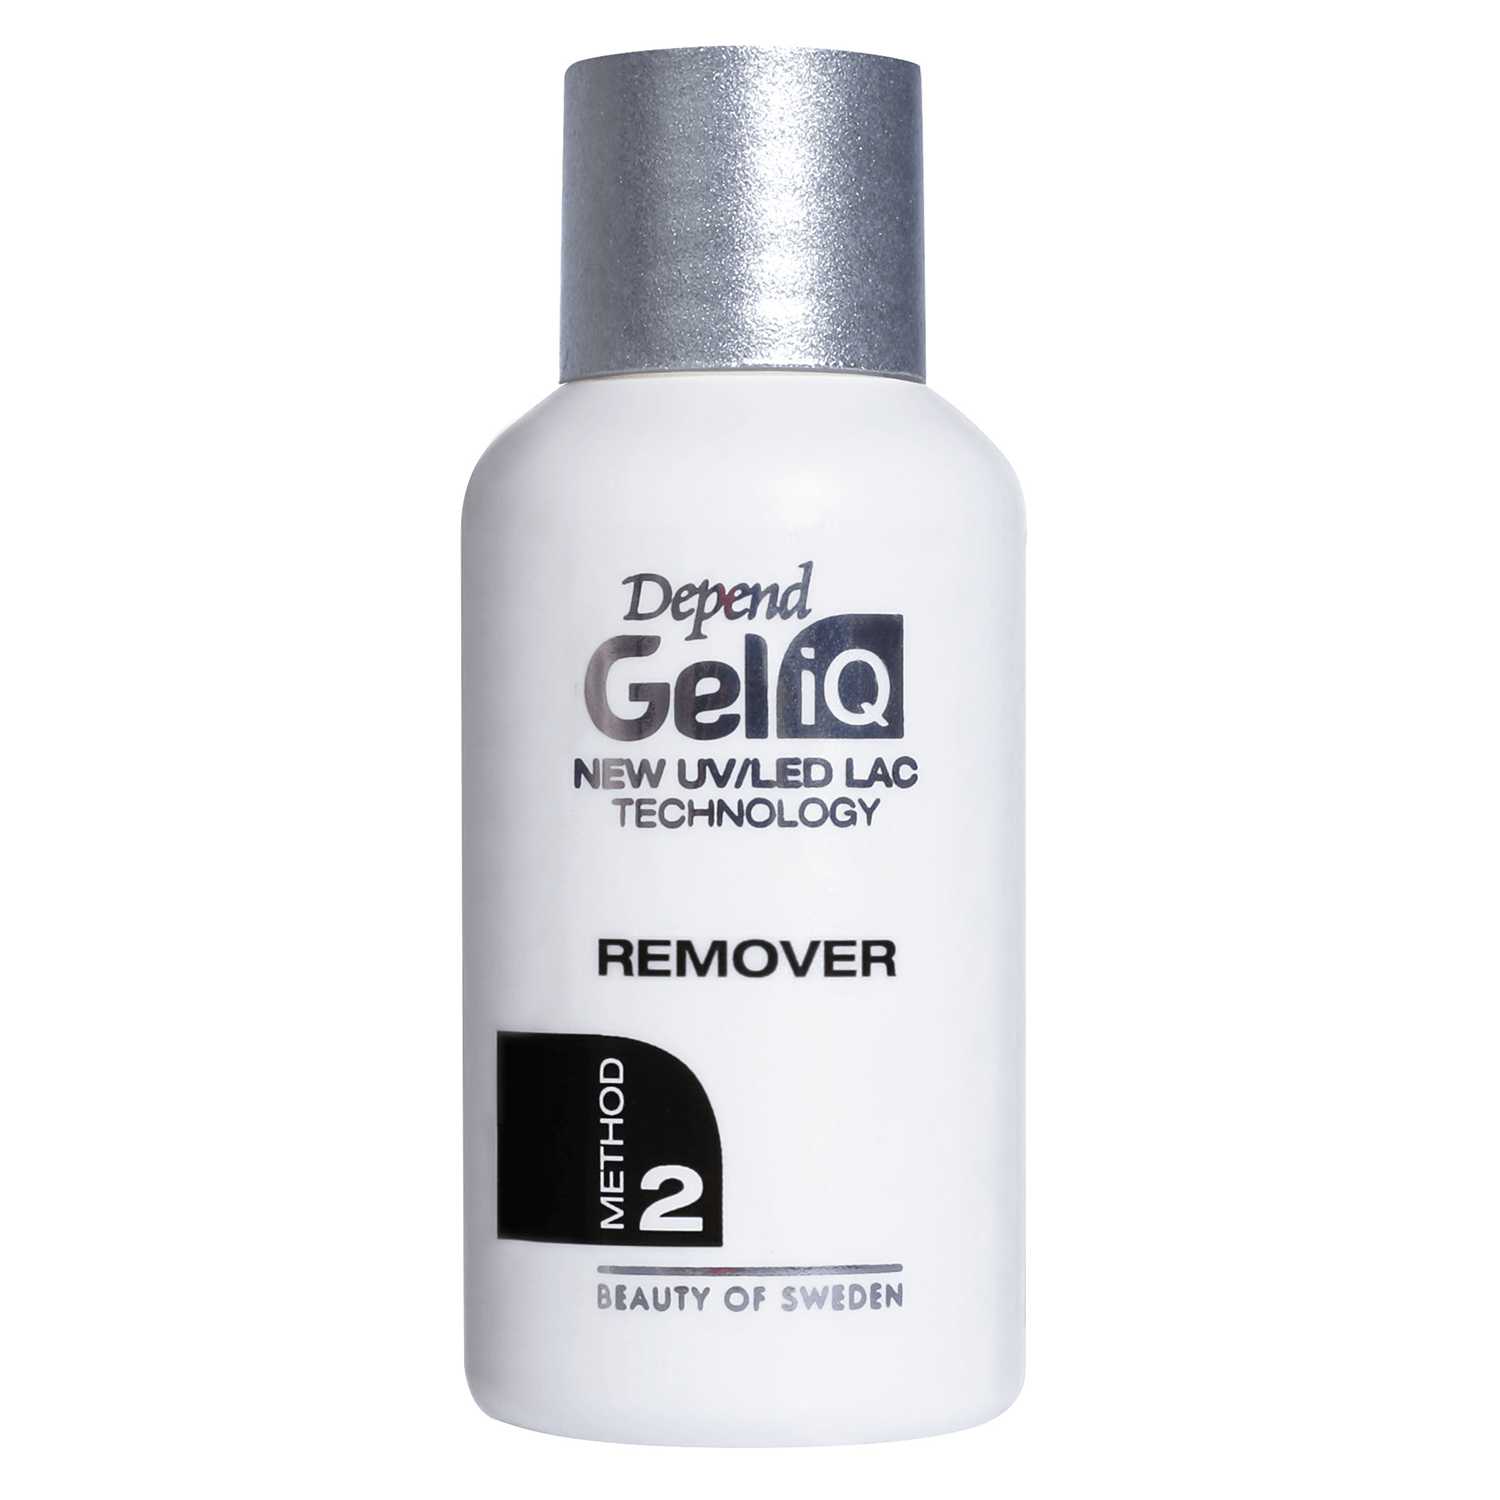 Produktbild von Gel iQ Cleanser & Remover - Remover Method 2